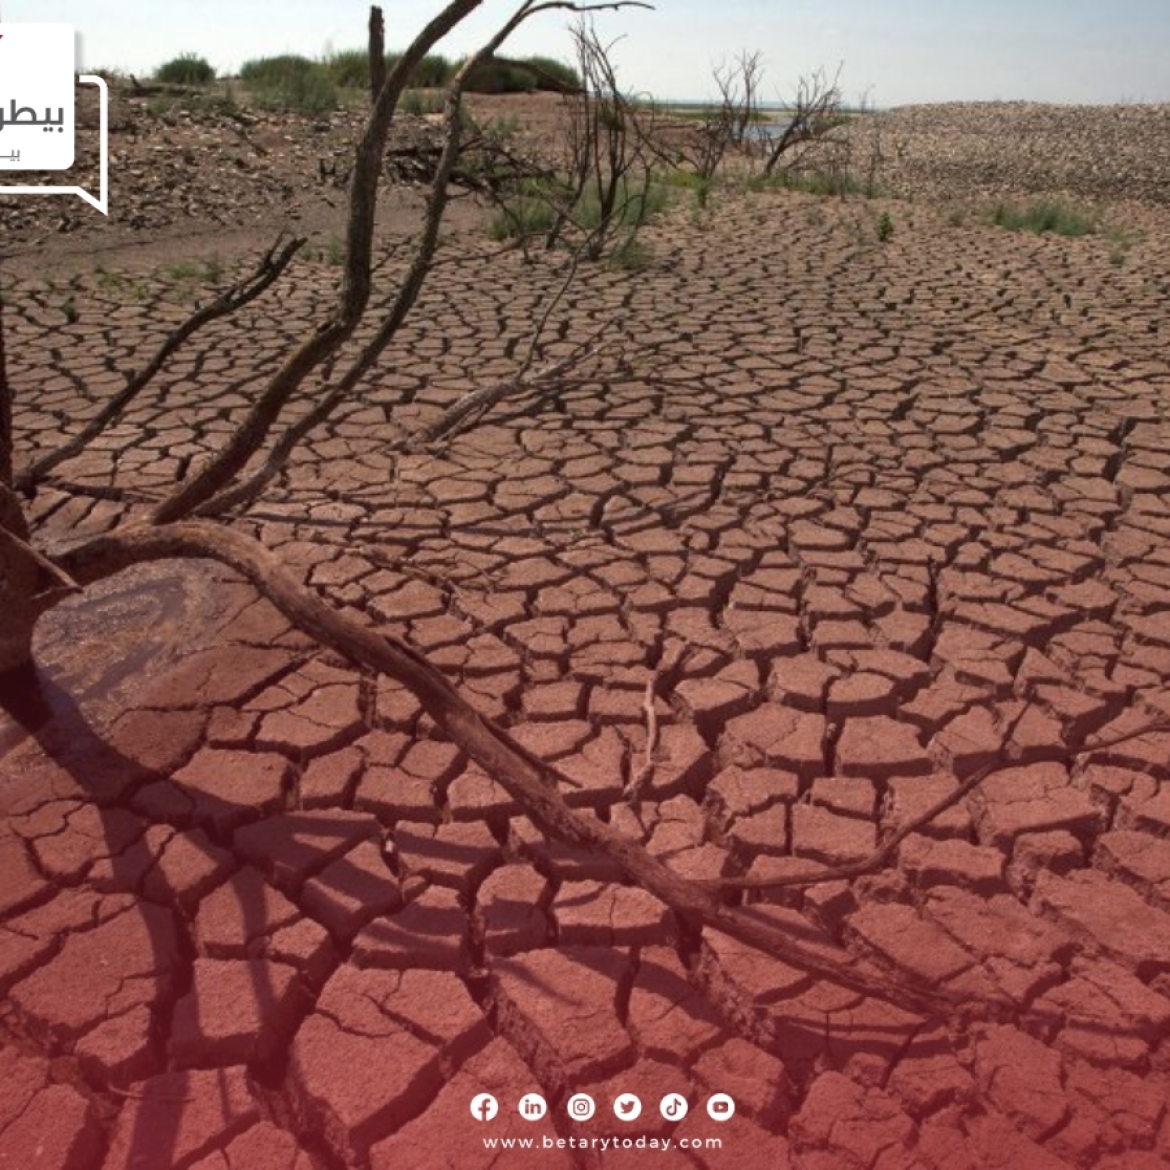 قطاع الحبوب يتأزم ويحتدم بفعل الجفاف بالبلاد المغربية